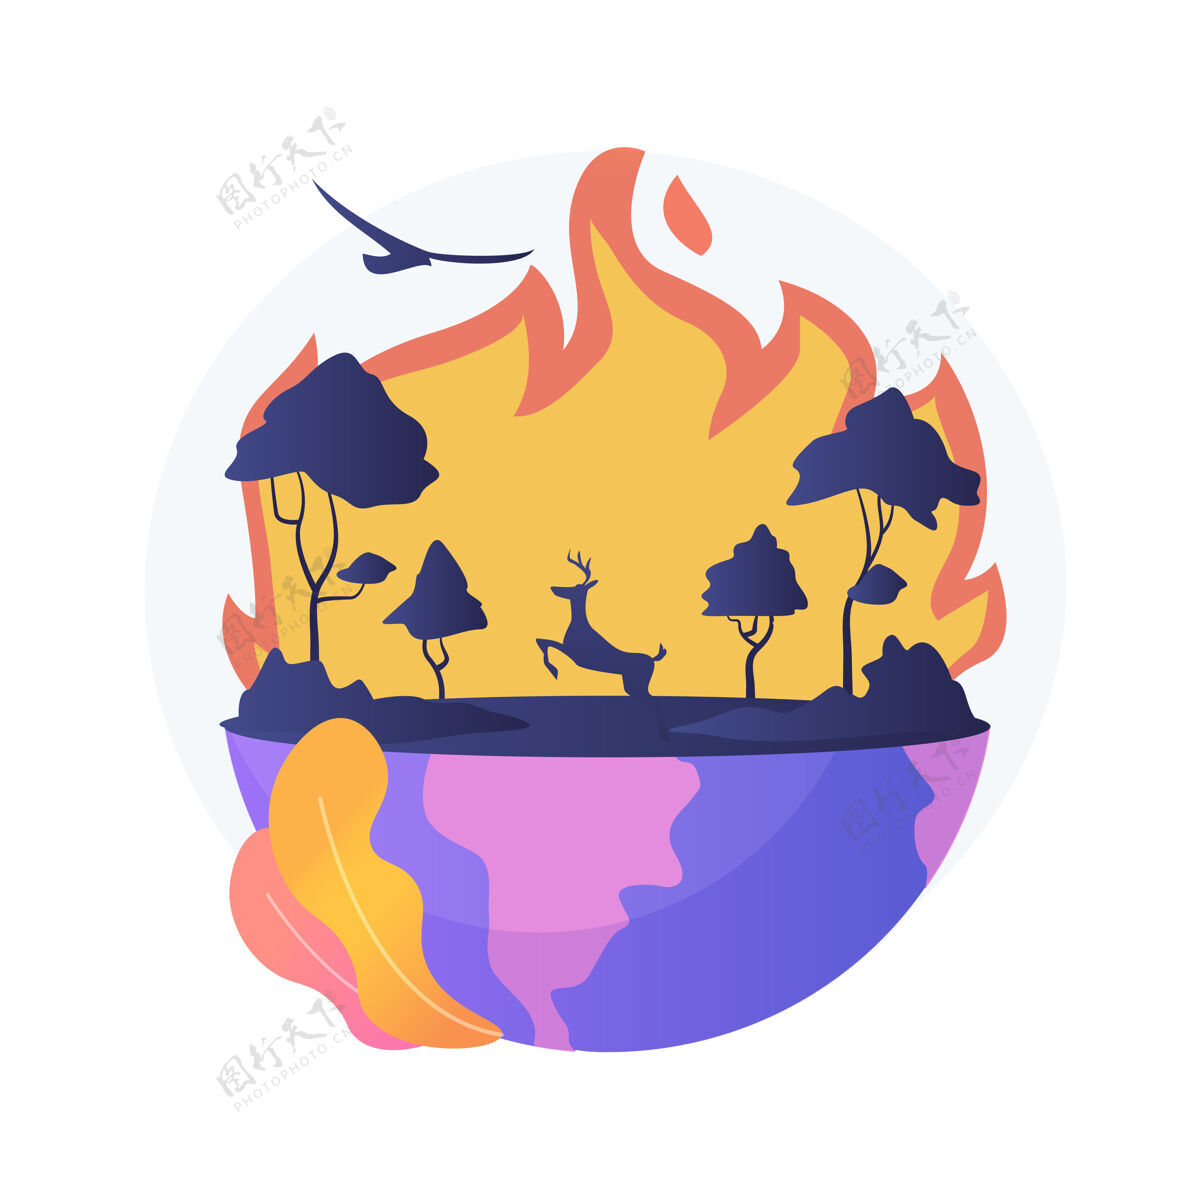 破坏野火抽象概念说明森林火灾 消防 野火原因 野生动物损失 全球变暖后果 自然灾害 高温热动物平面